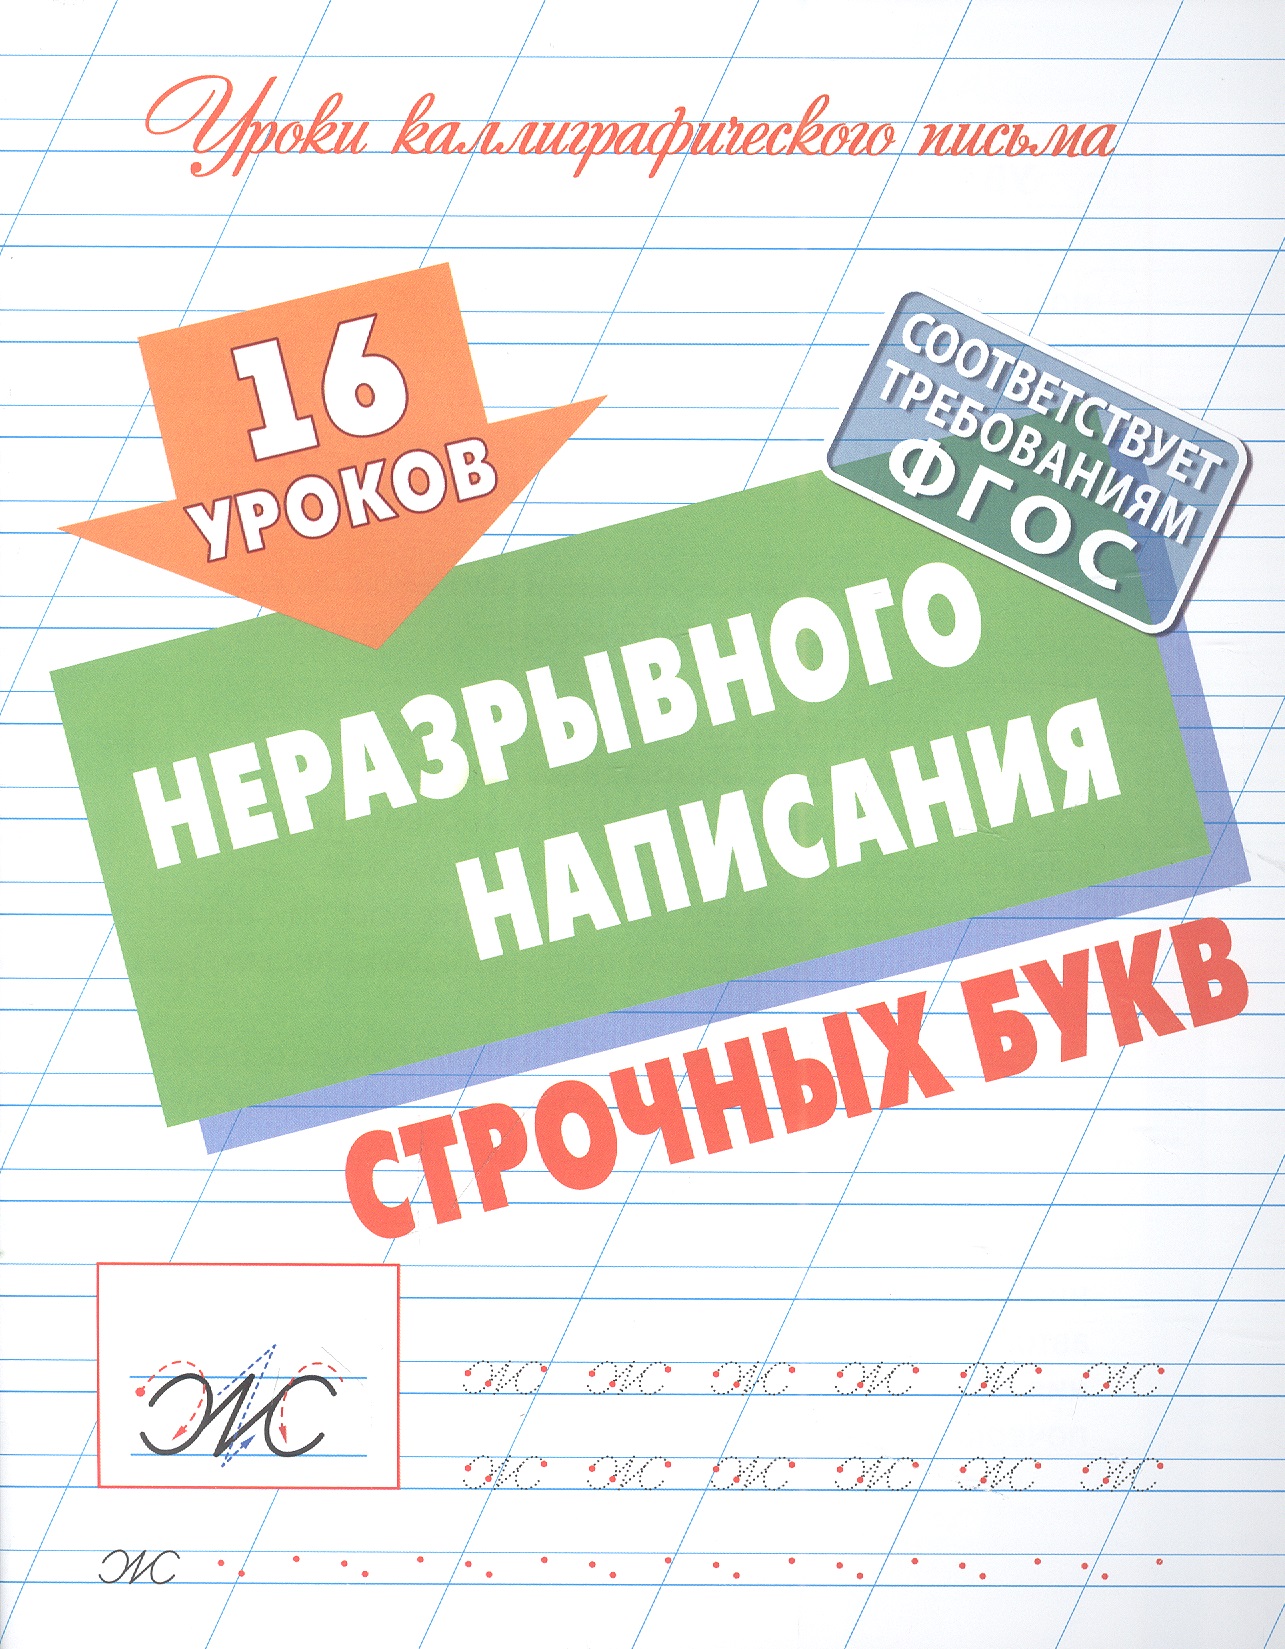 Петренко Станислав Викторович - 16 уроков неразрывного написания строчных букв